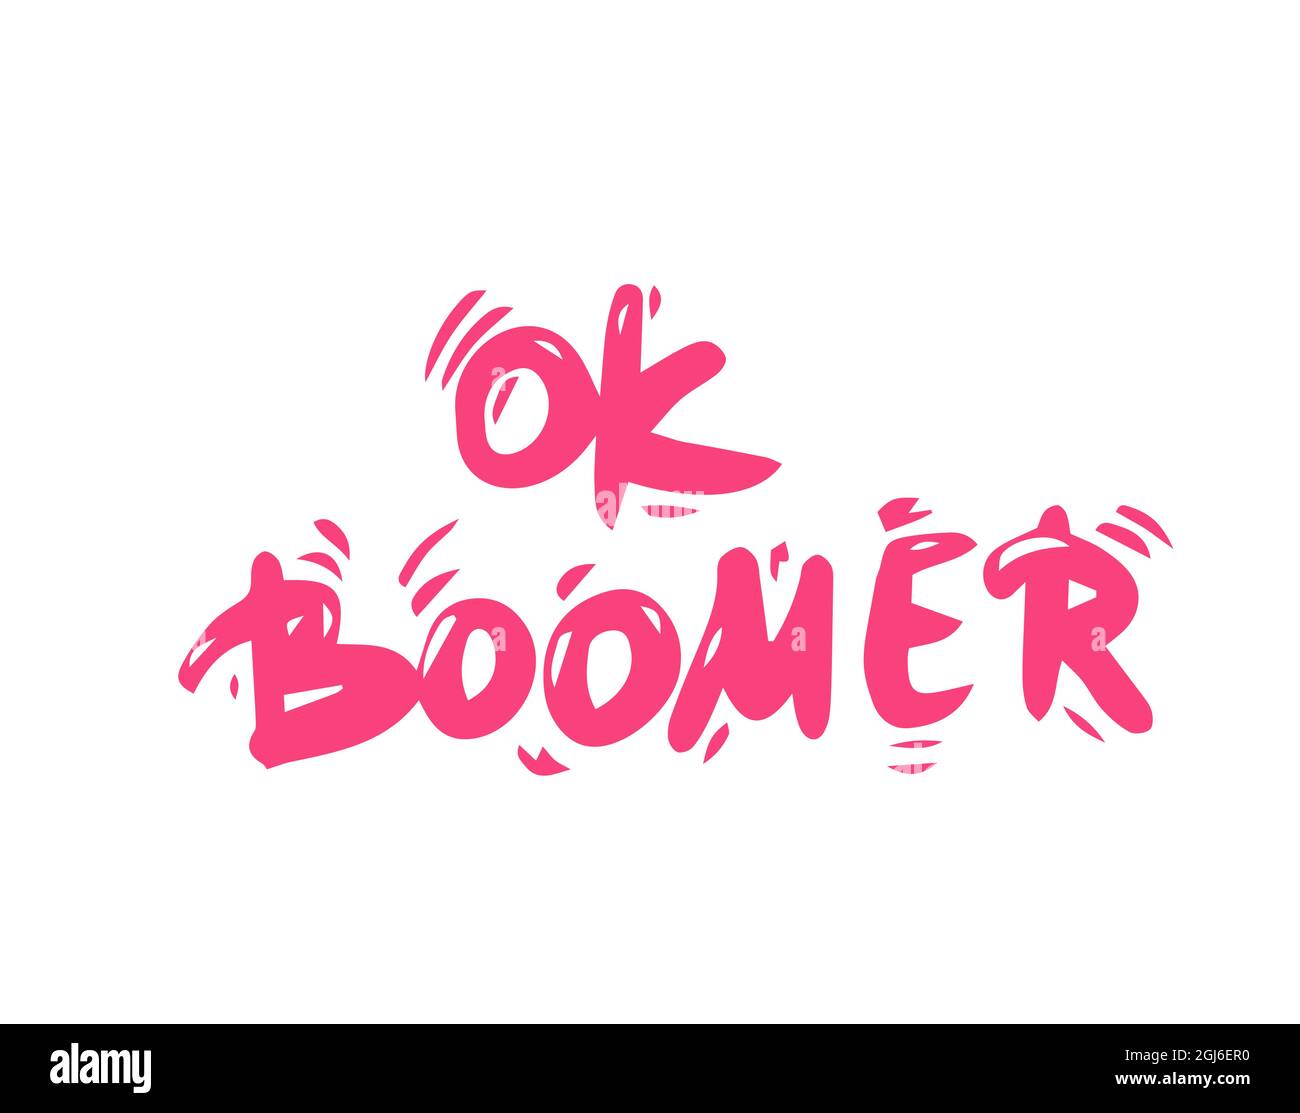 OK Boomer-Text. Handgezeichnete sarkastische Botschaft. Zitat der Generation z. Meme-Beschriftung. Stock Vektor